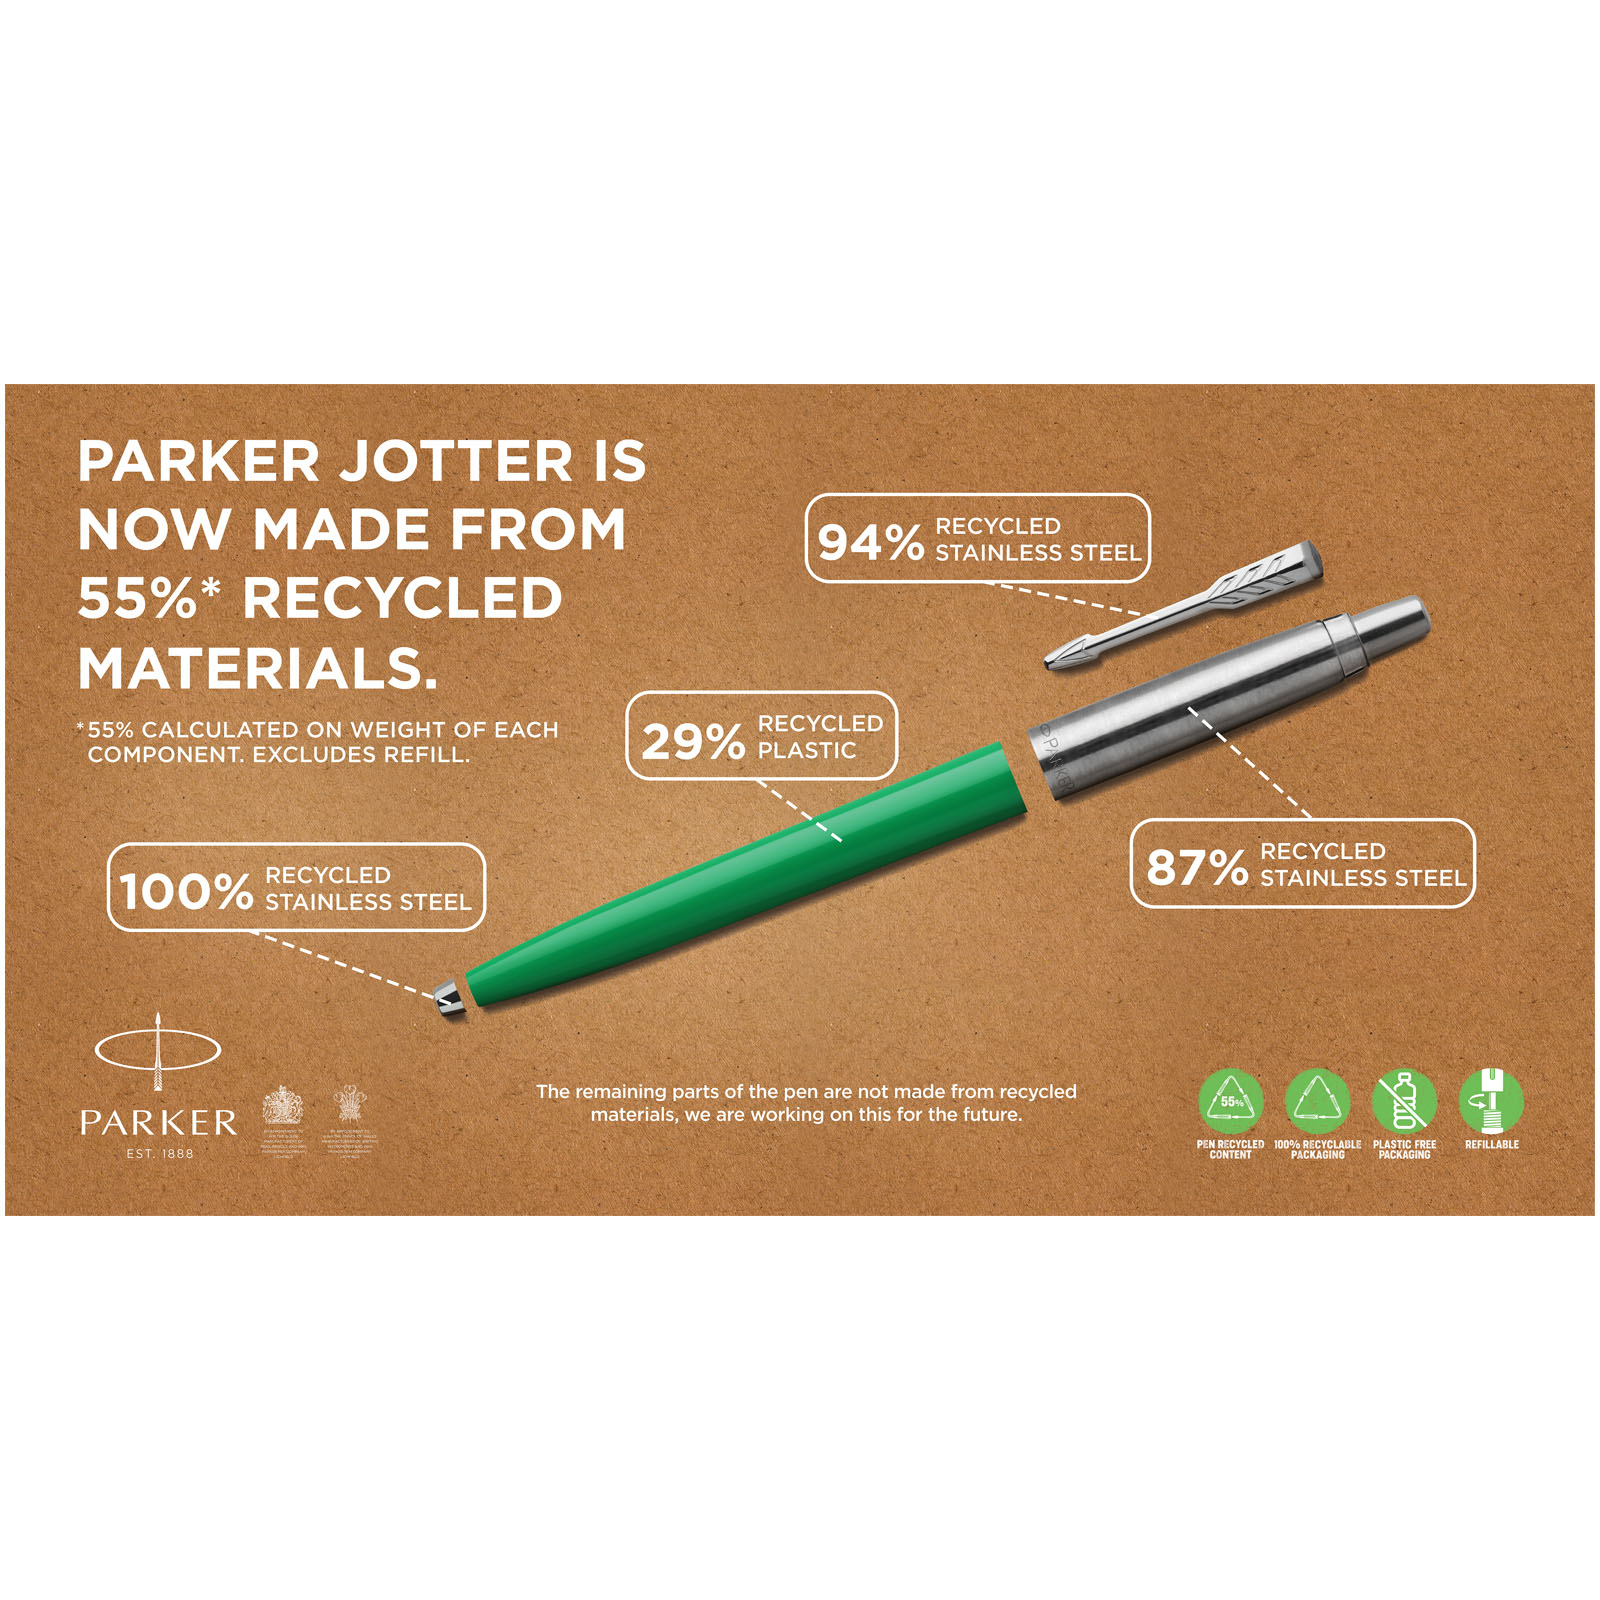 Advertising Ballpoint Pens - Parker Jotter Recycled ballpoint pen - 5